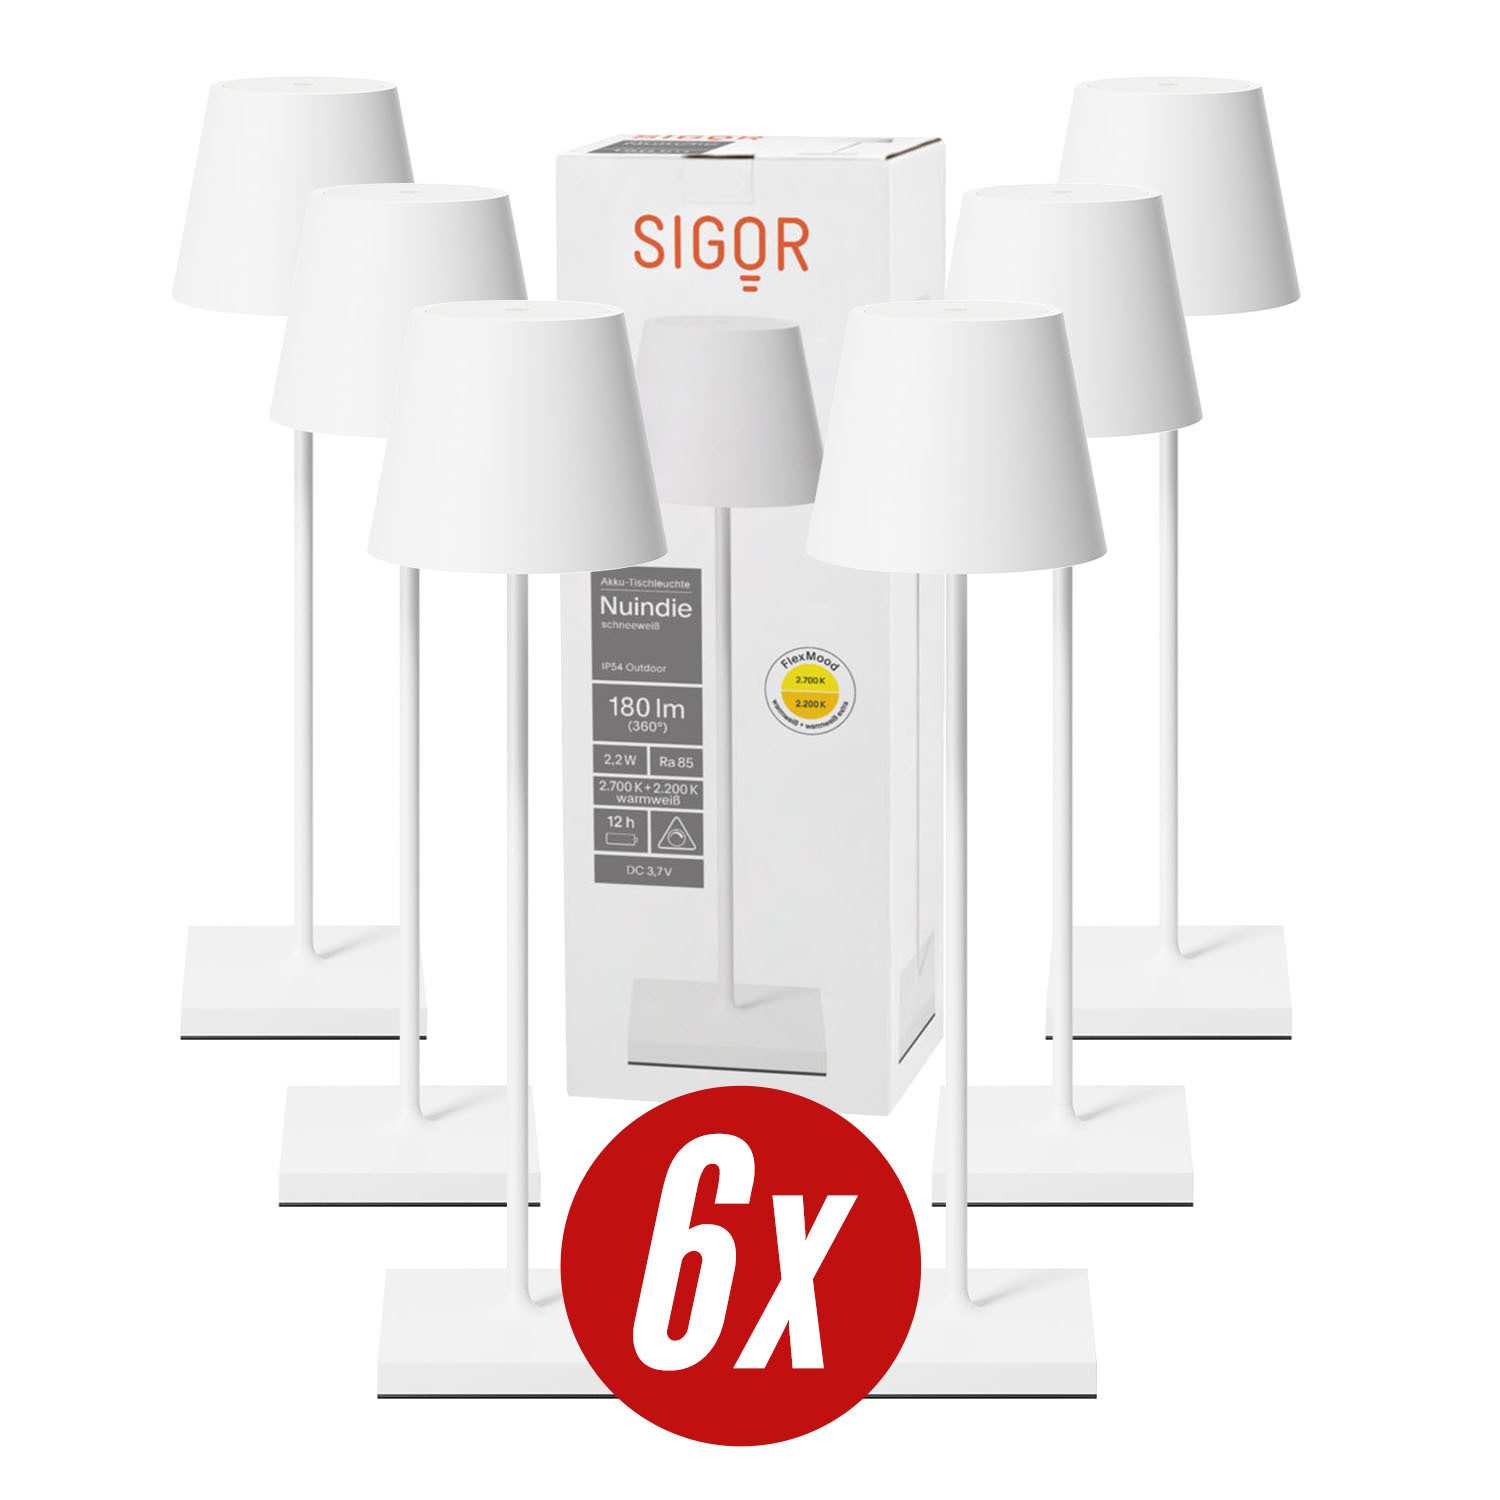 SIGOR LED Tischleuchte 6x Nuindie USB-C 380mm schneeweiß, Dimmbar, 1 LED Platine, 2.700 K / 2.200 K